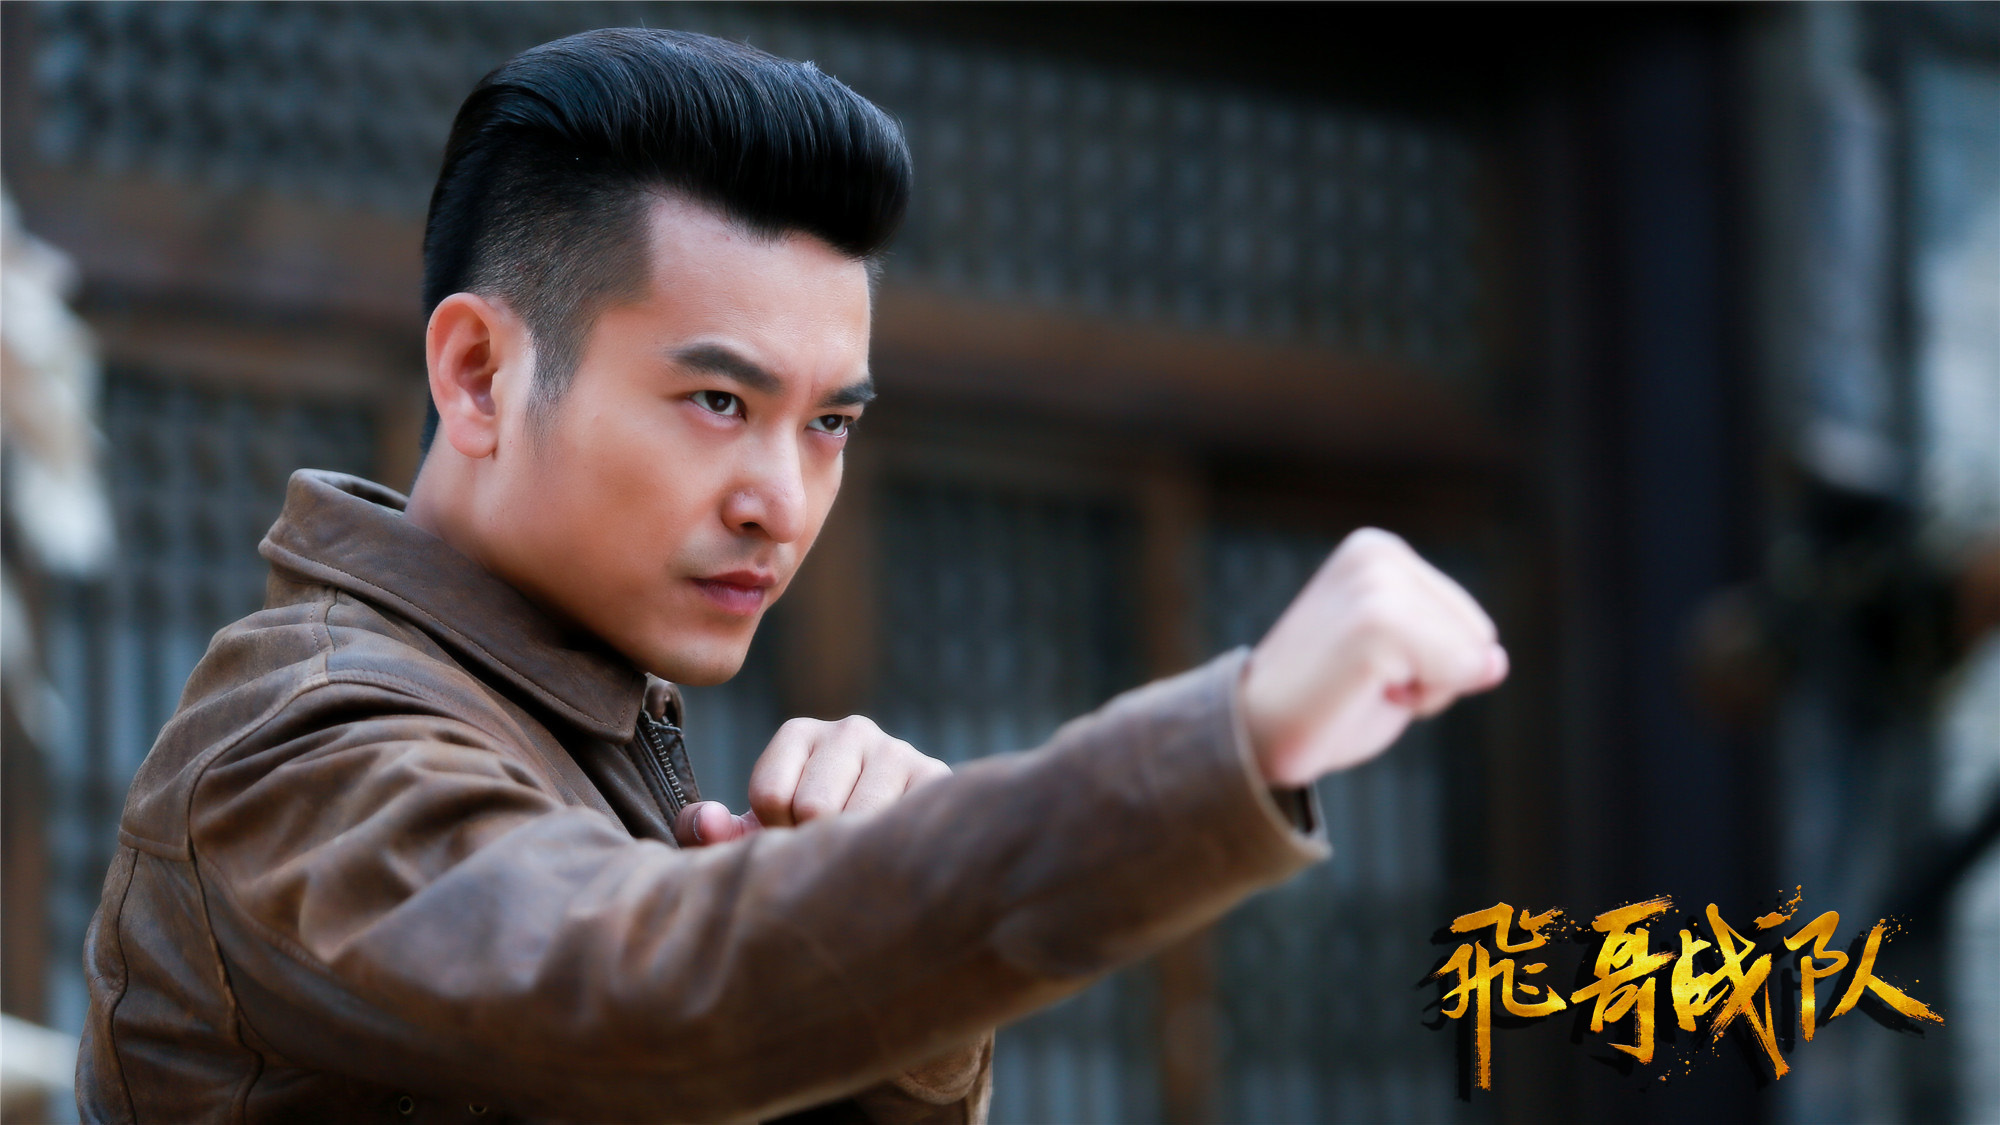 剧中袁文康饰演的江与彬温文尔雅,与《飞哥战队》中的智勇双全形成